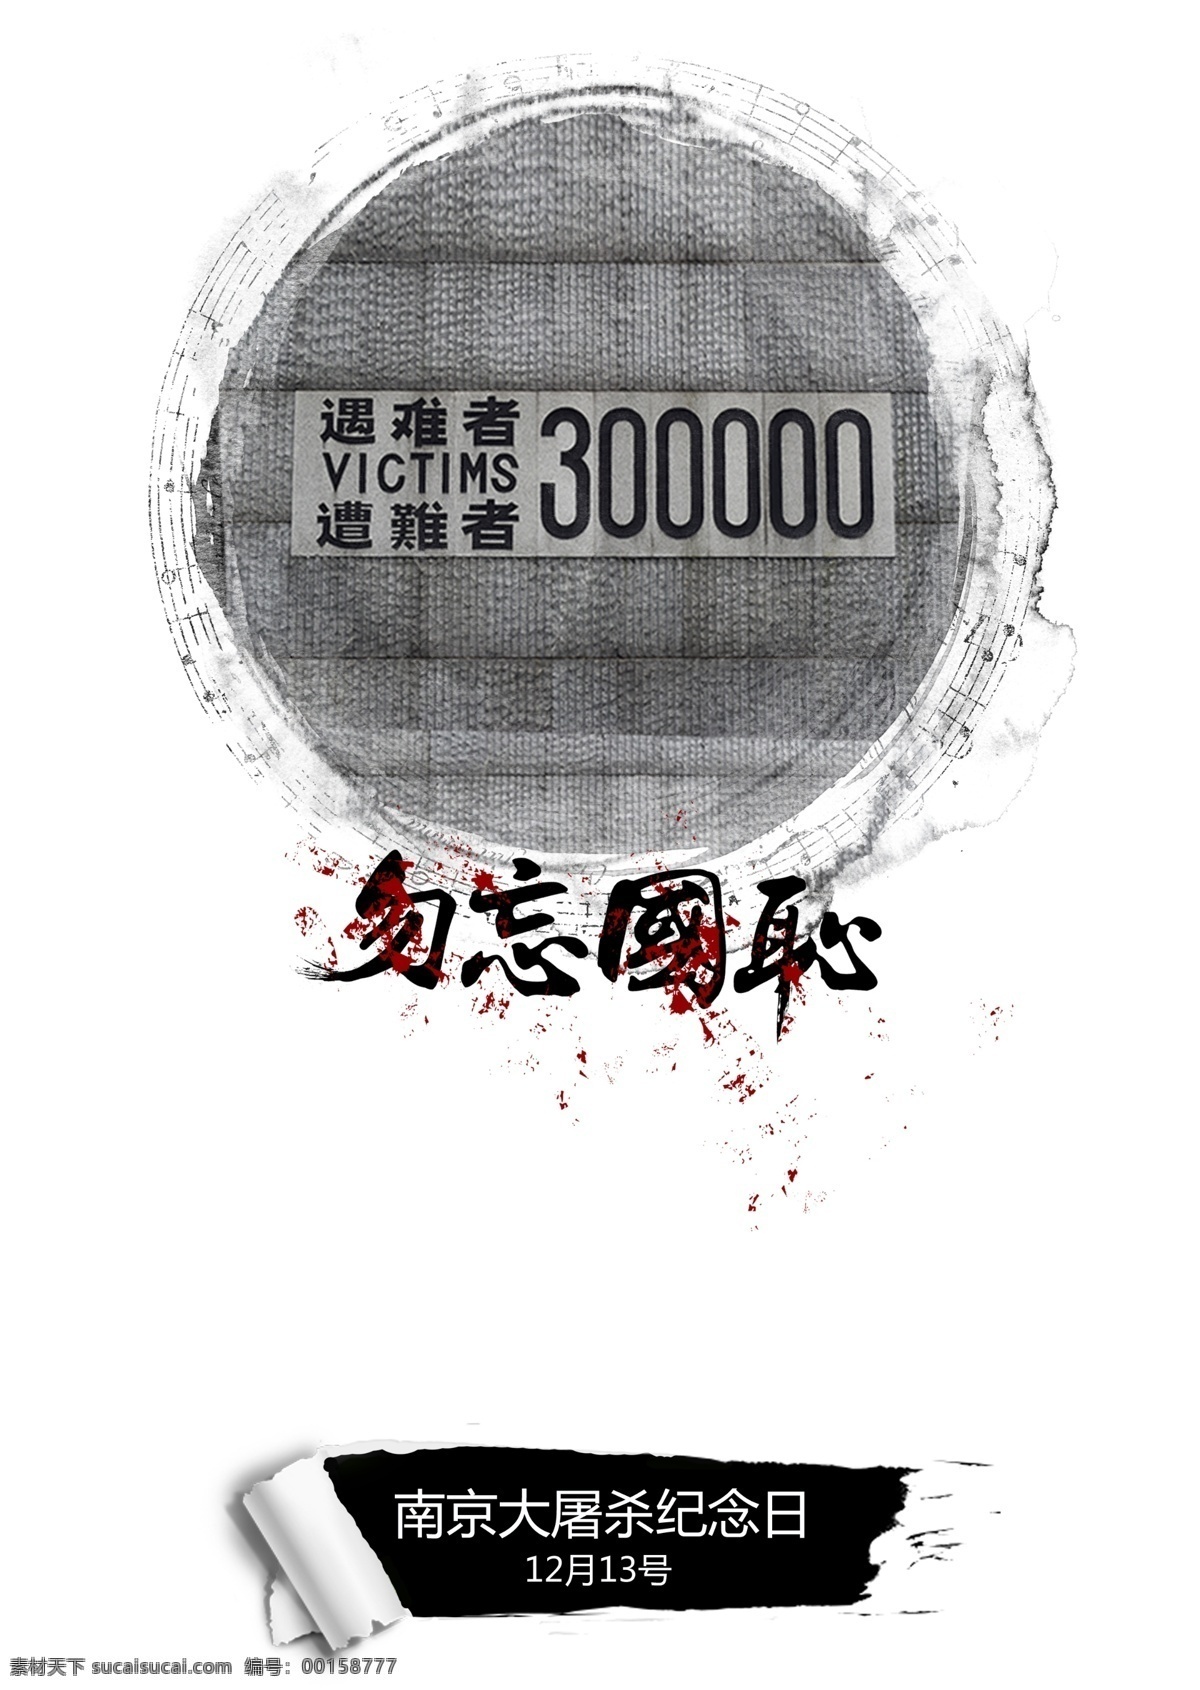 大屠杀 公祭 公祭日海报 海报 南京 南京大屠杀